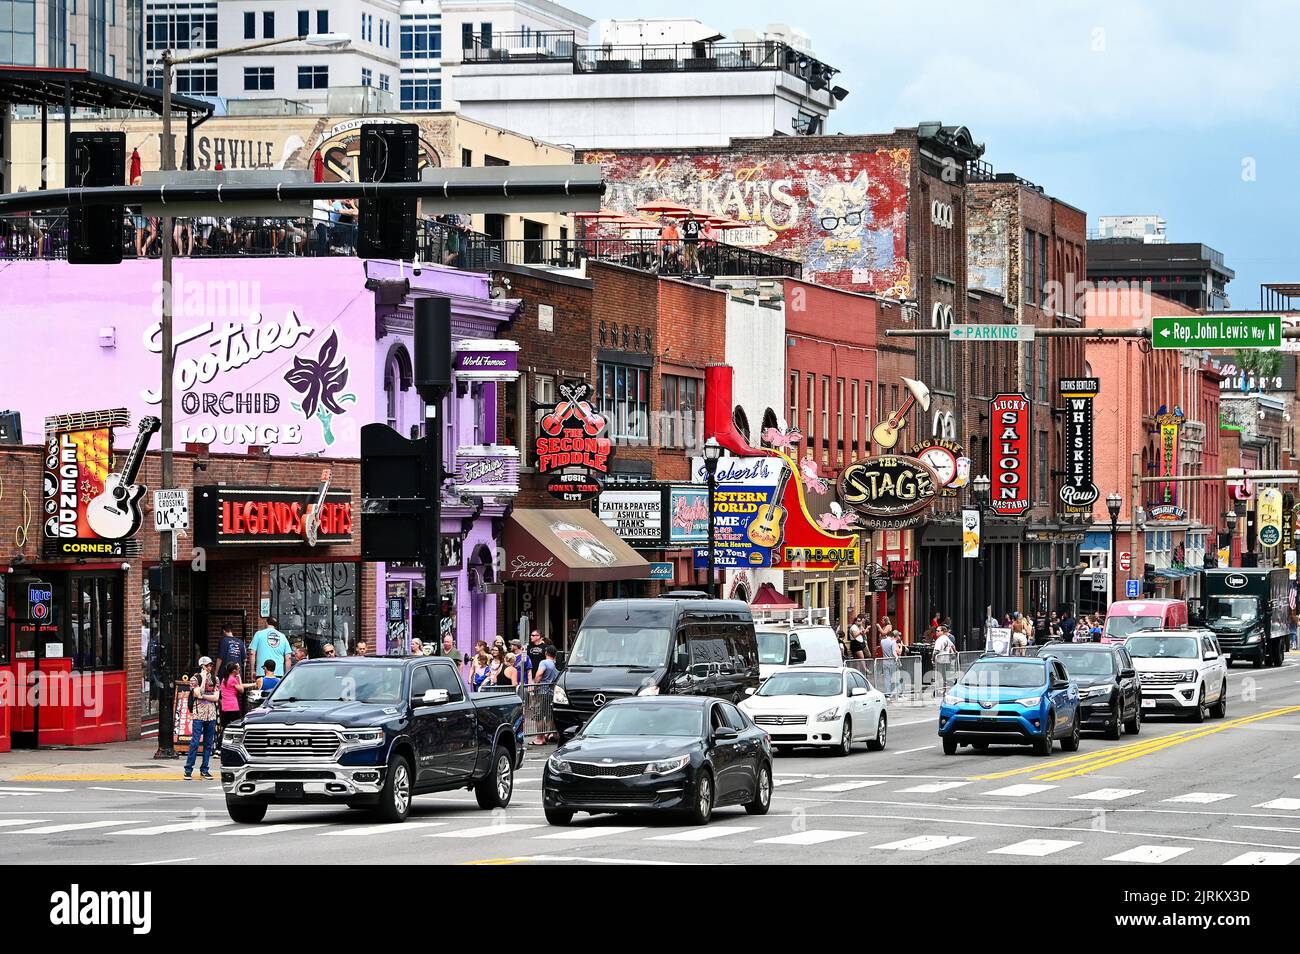 Broadway mit Bars und Neonreklame; Nashville, Tennessee, Vereinigte Staaten von Amerika Stock Photo